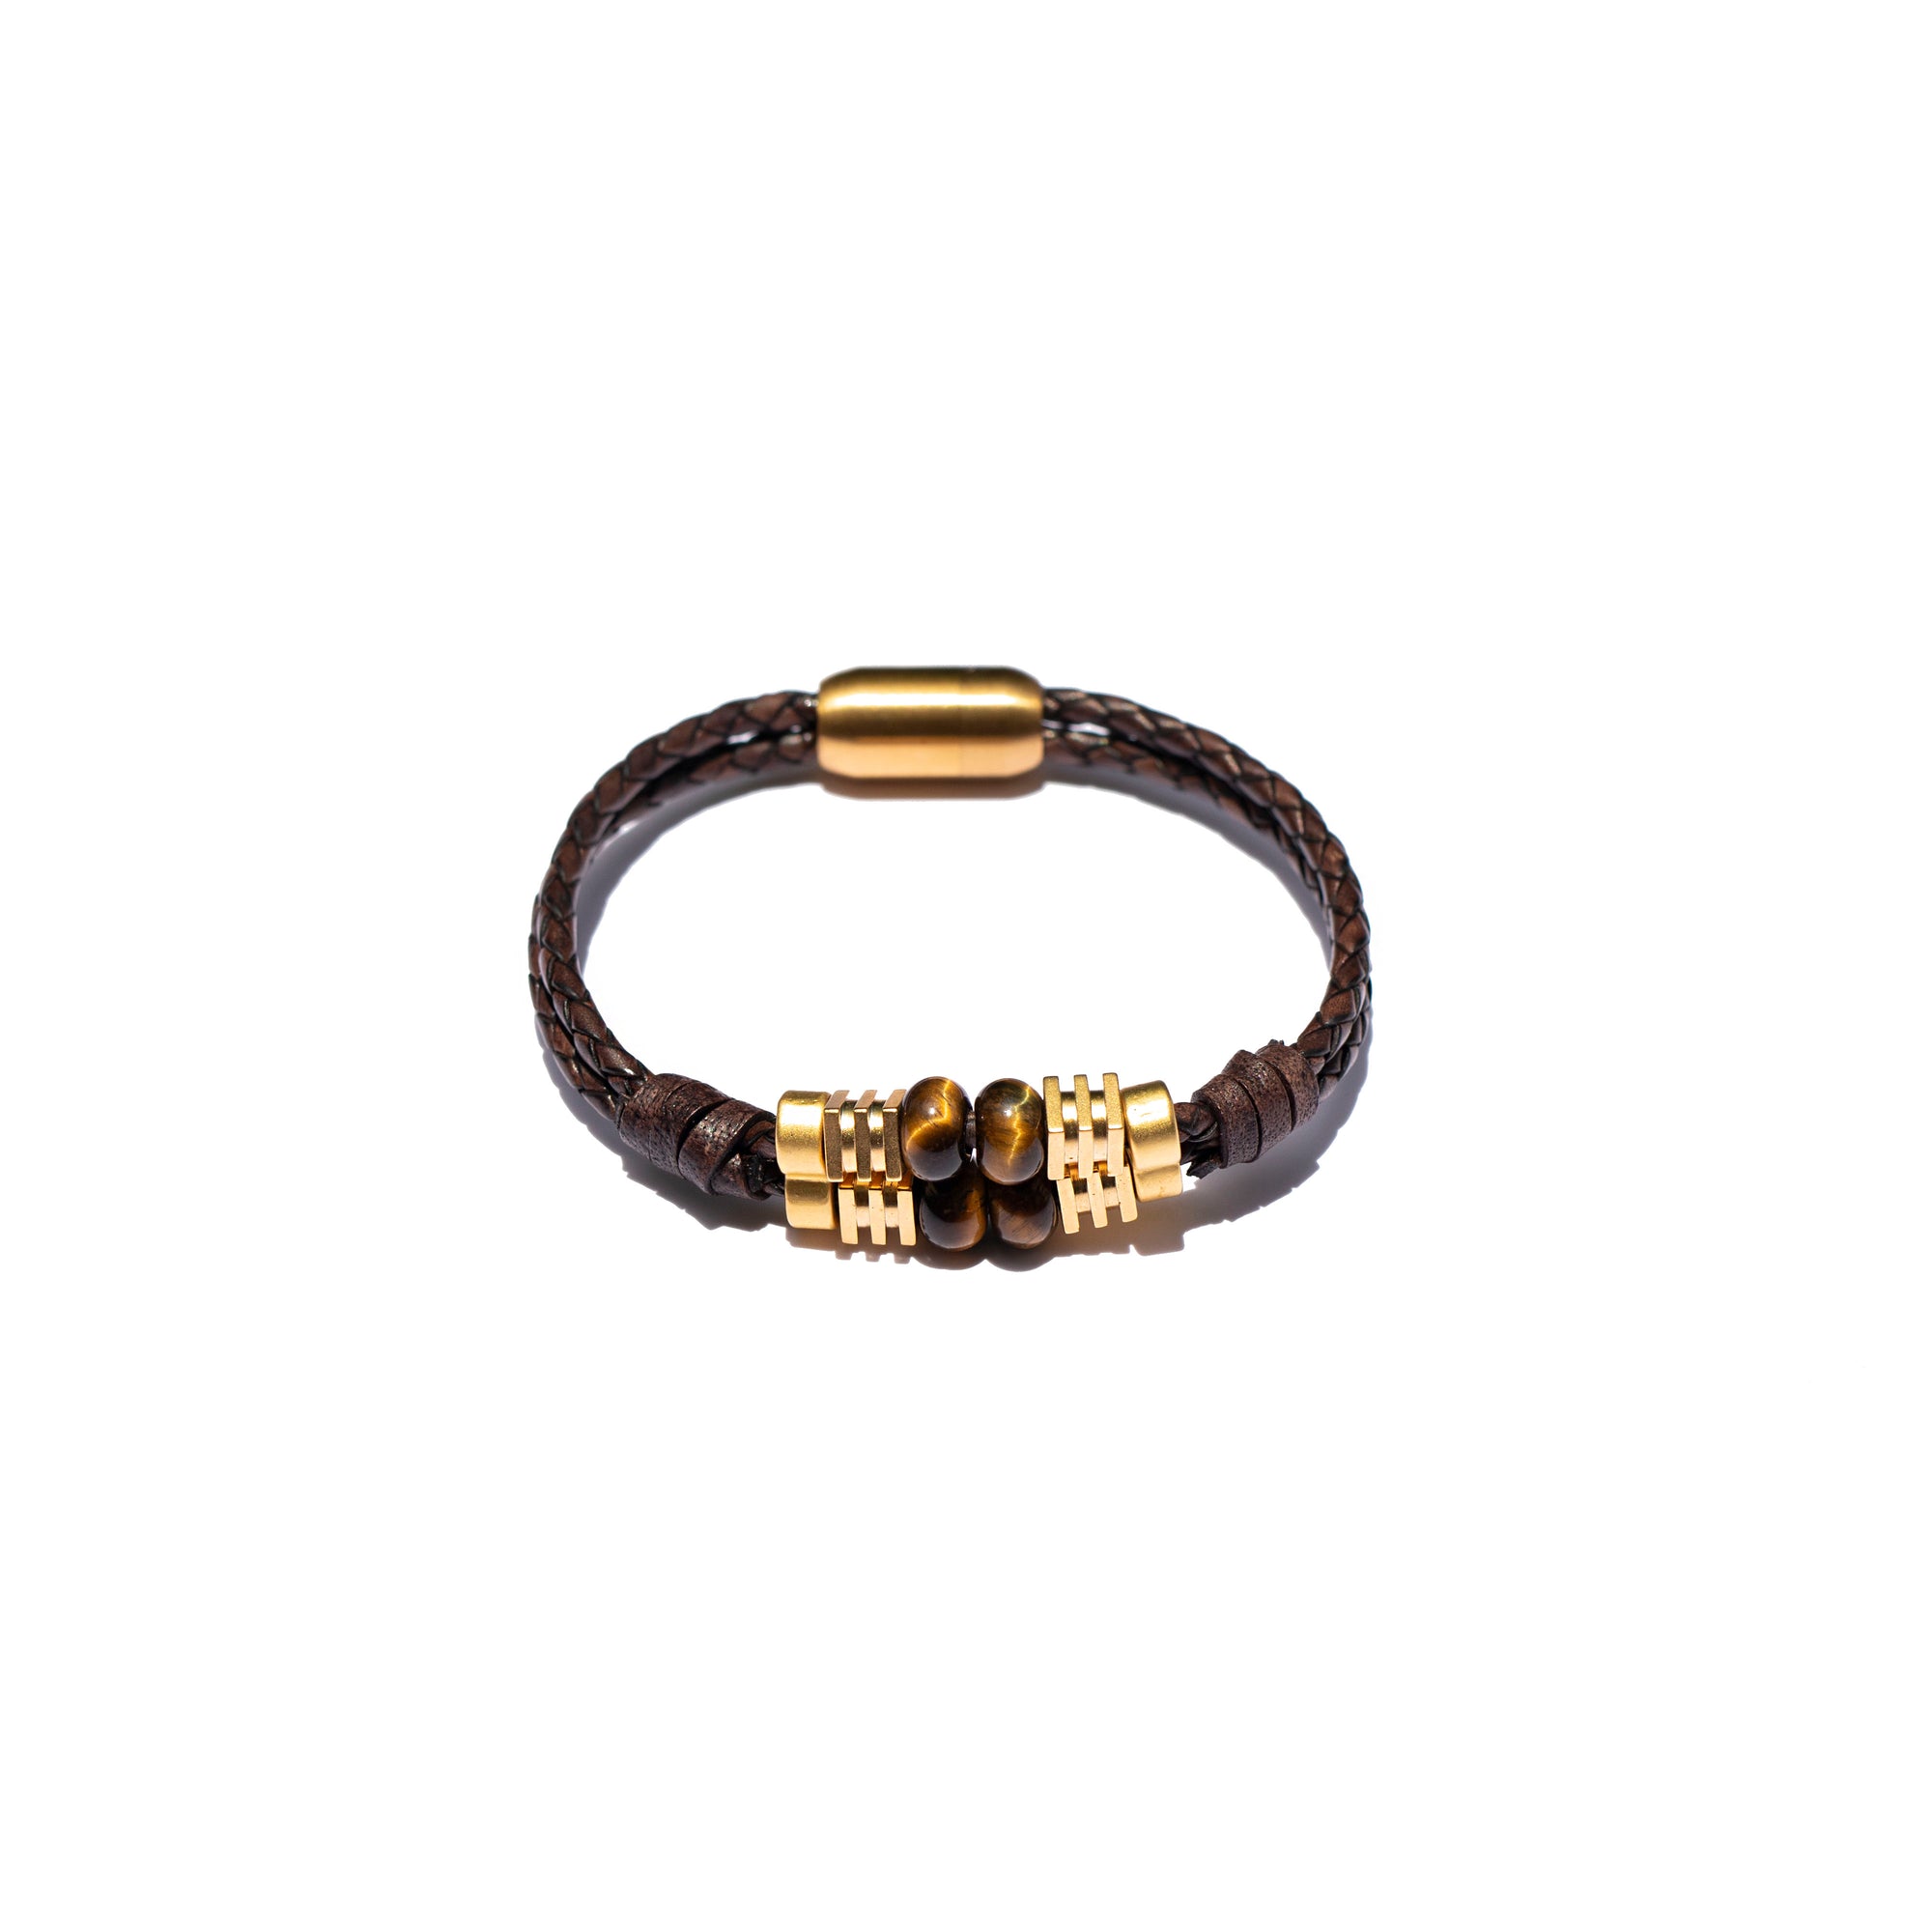 Storyteller Collection: 24K Gold Vermeil, Golden Tiger's Eye & Wrapped Leather Bracelet